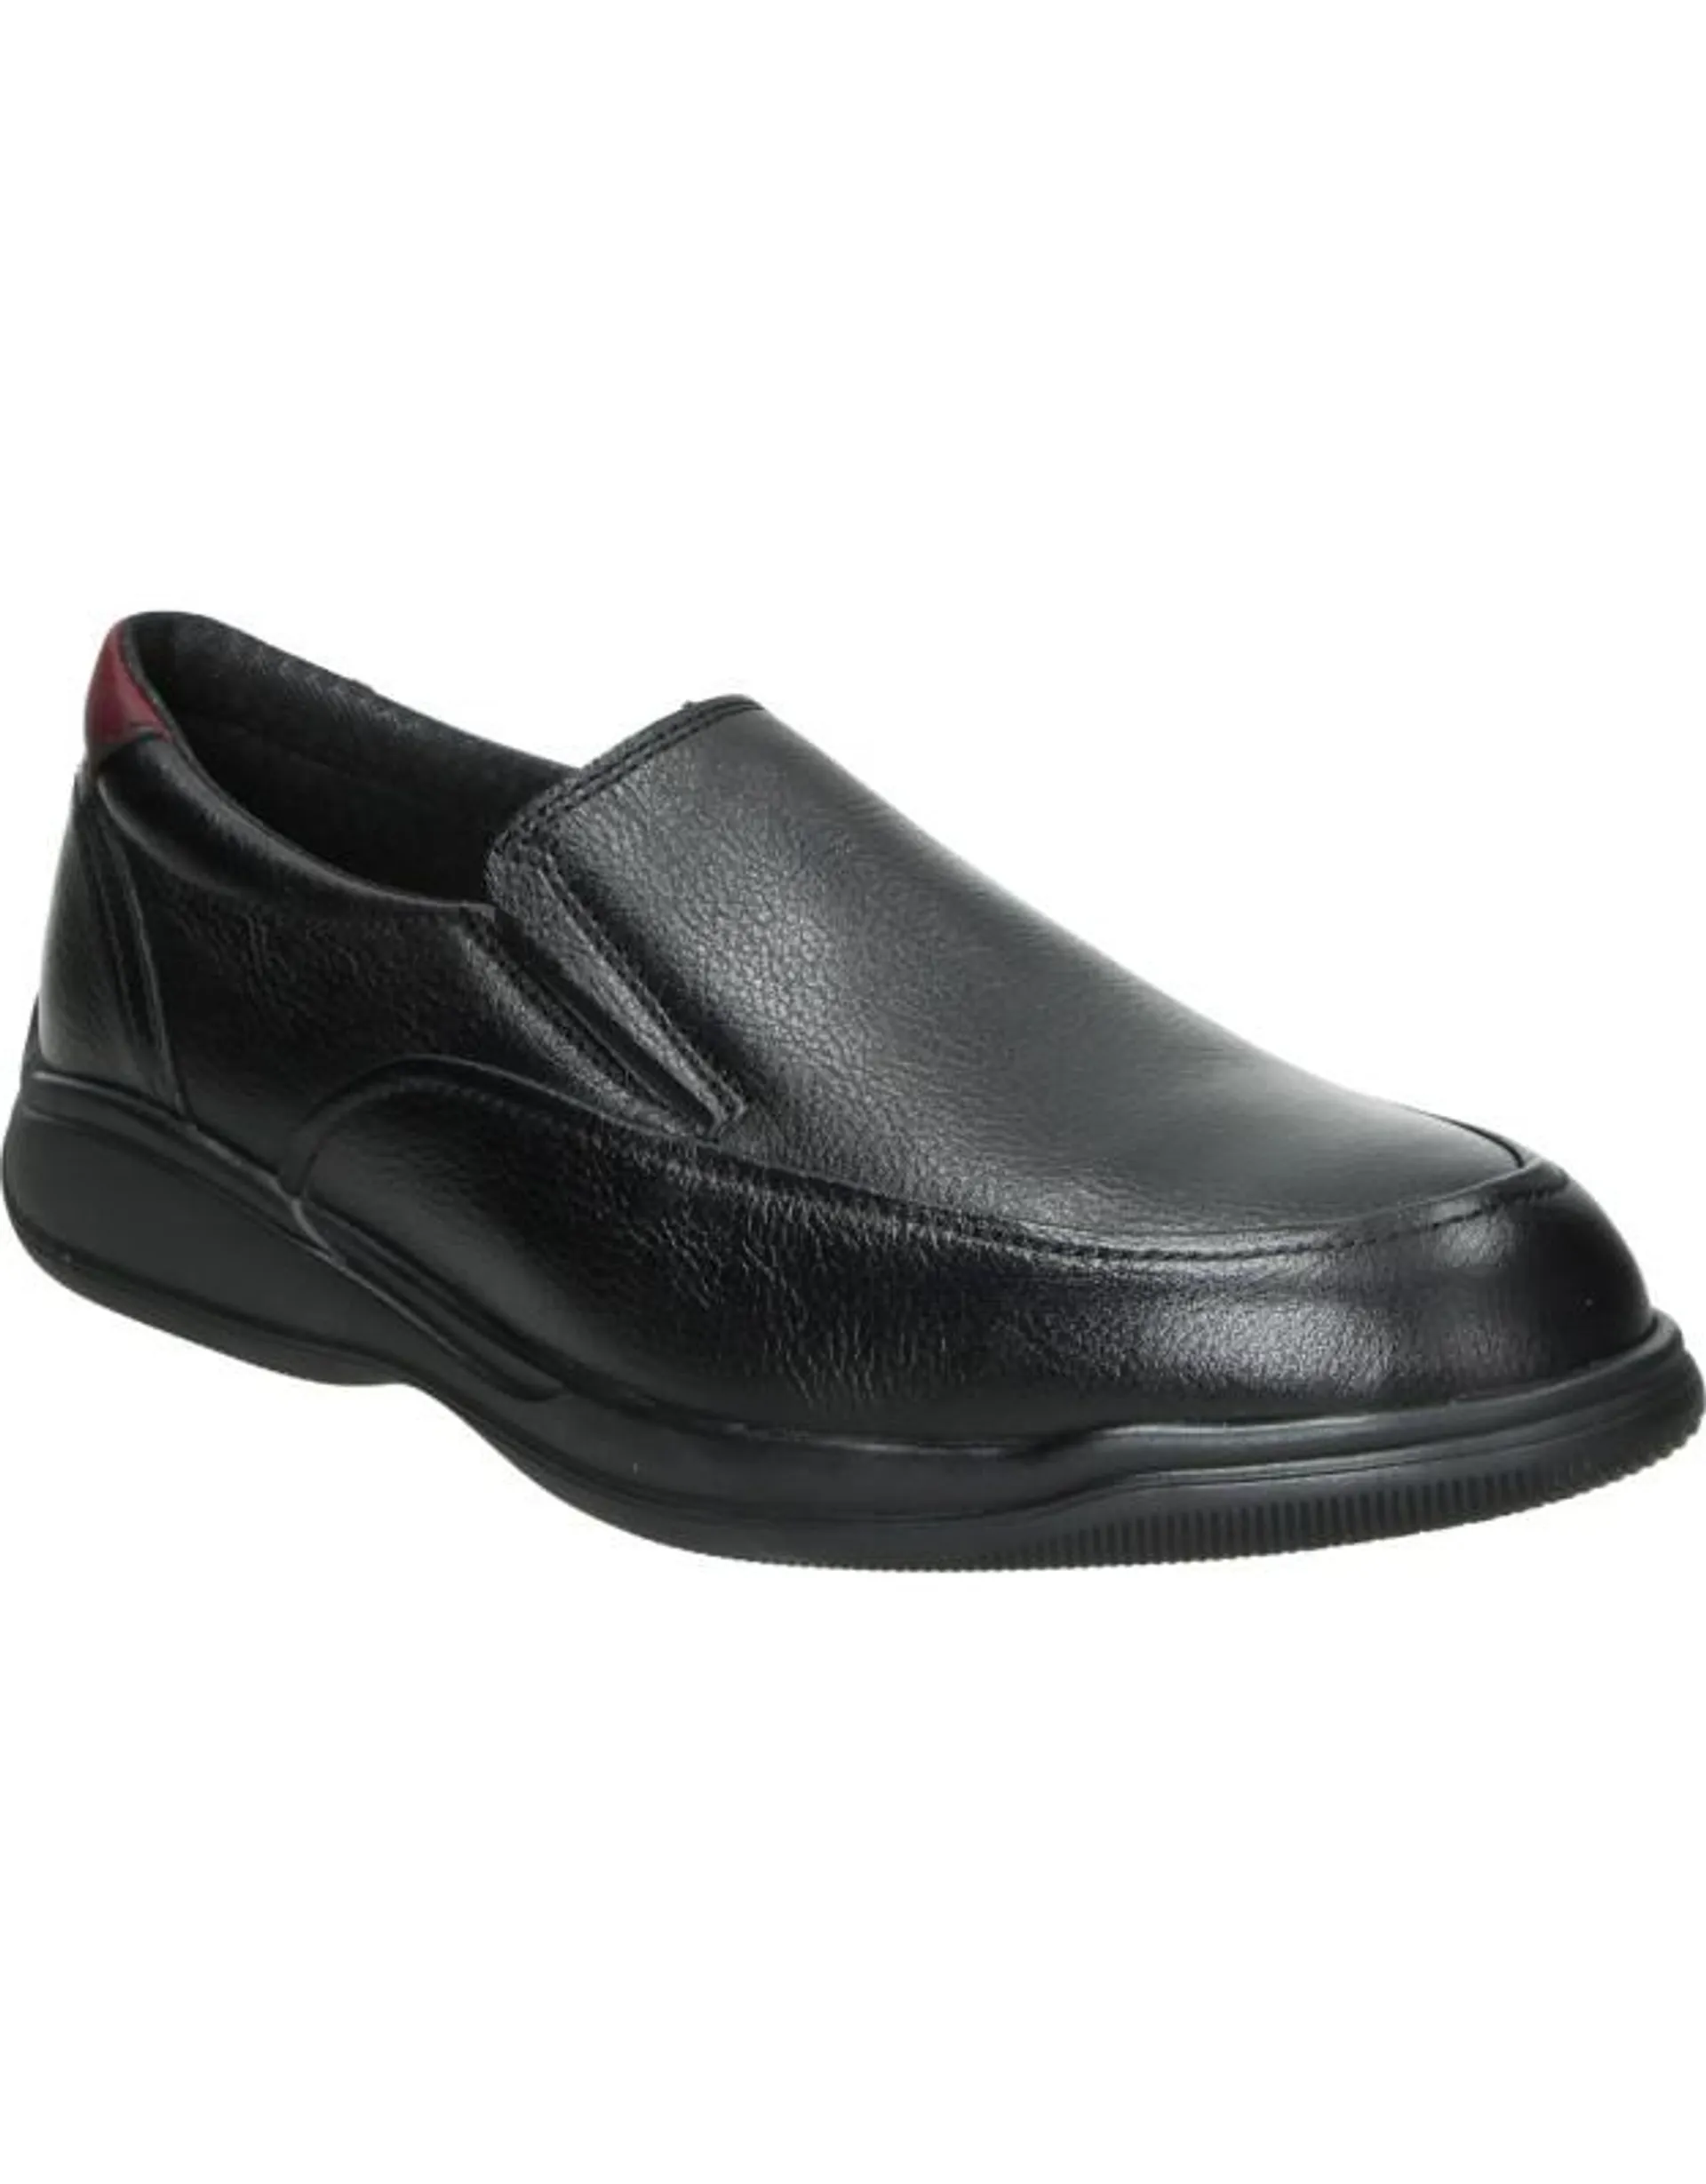 Zapatos de hombre NUPER 3011 color negro